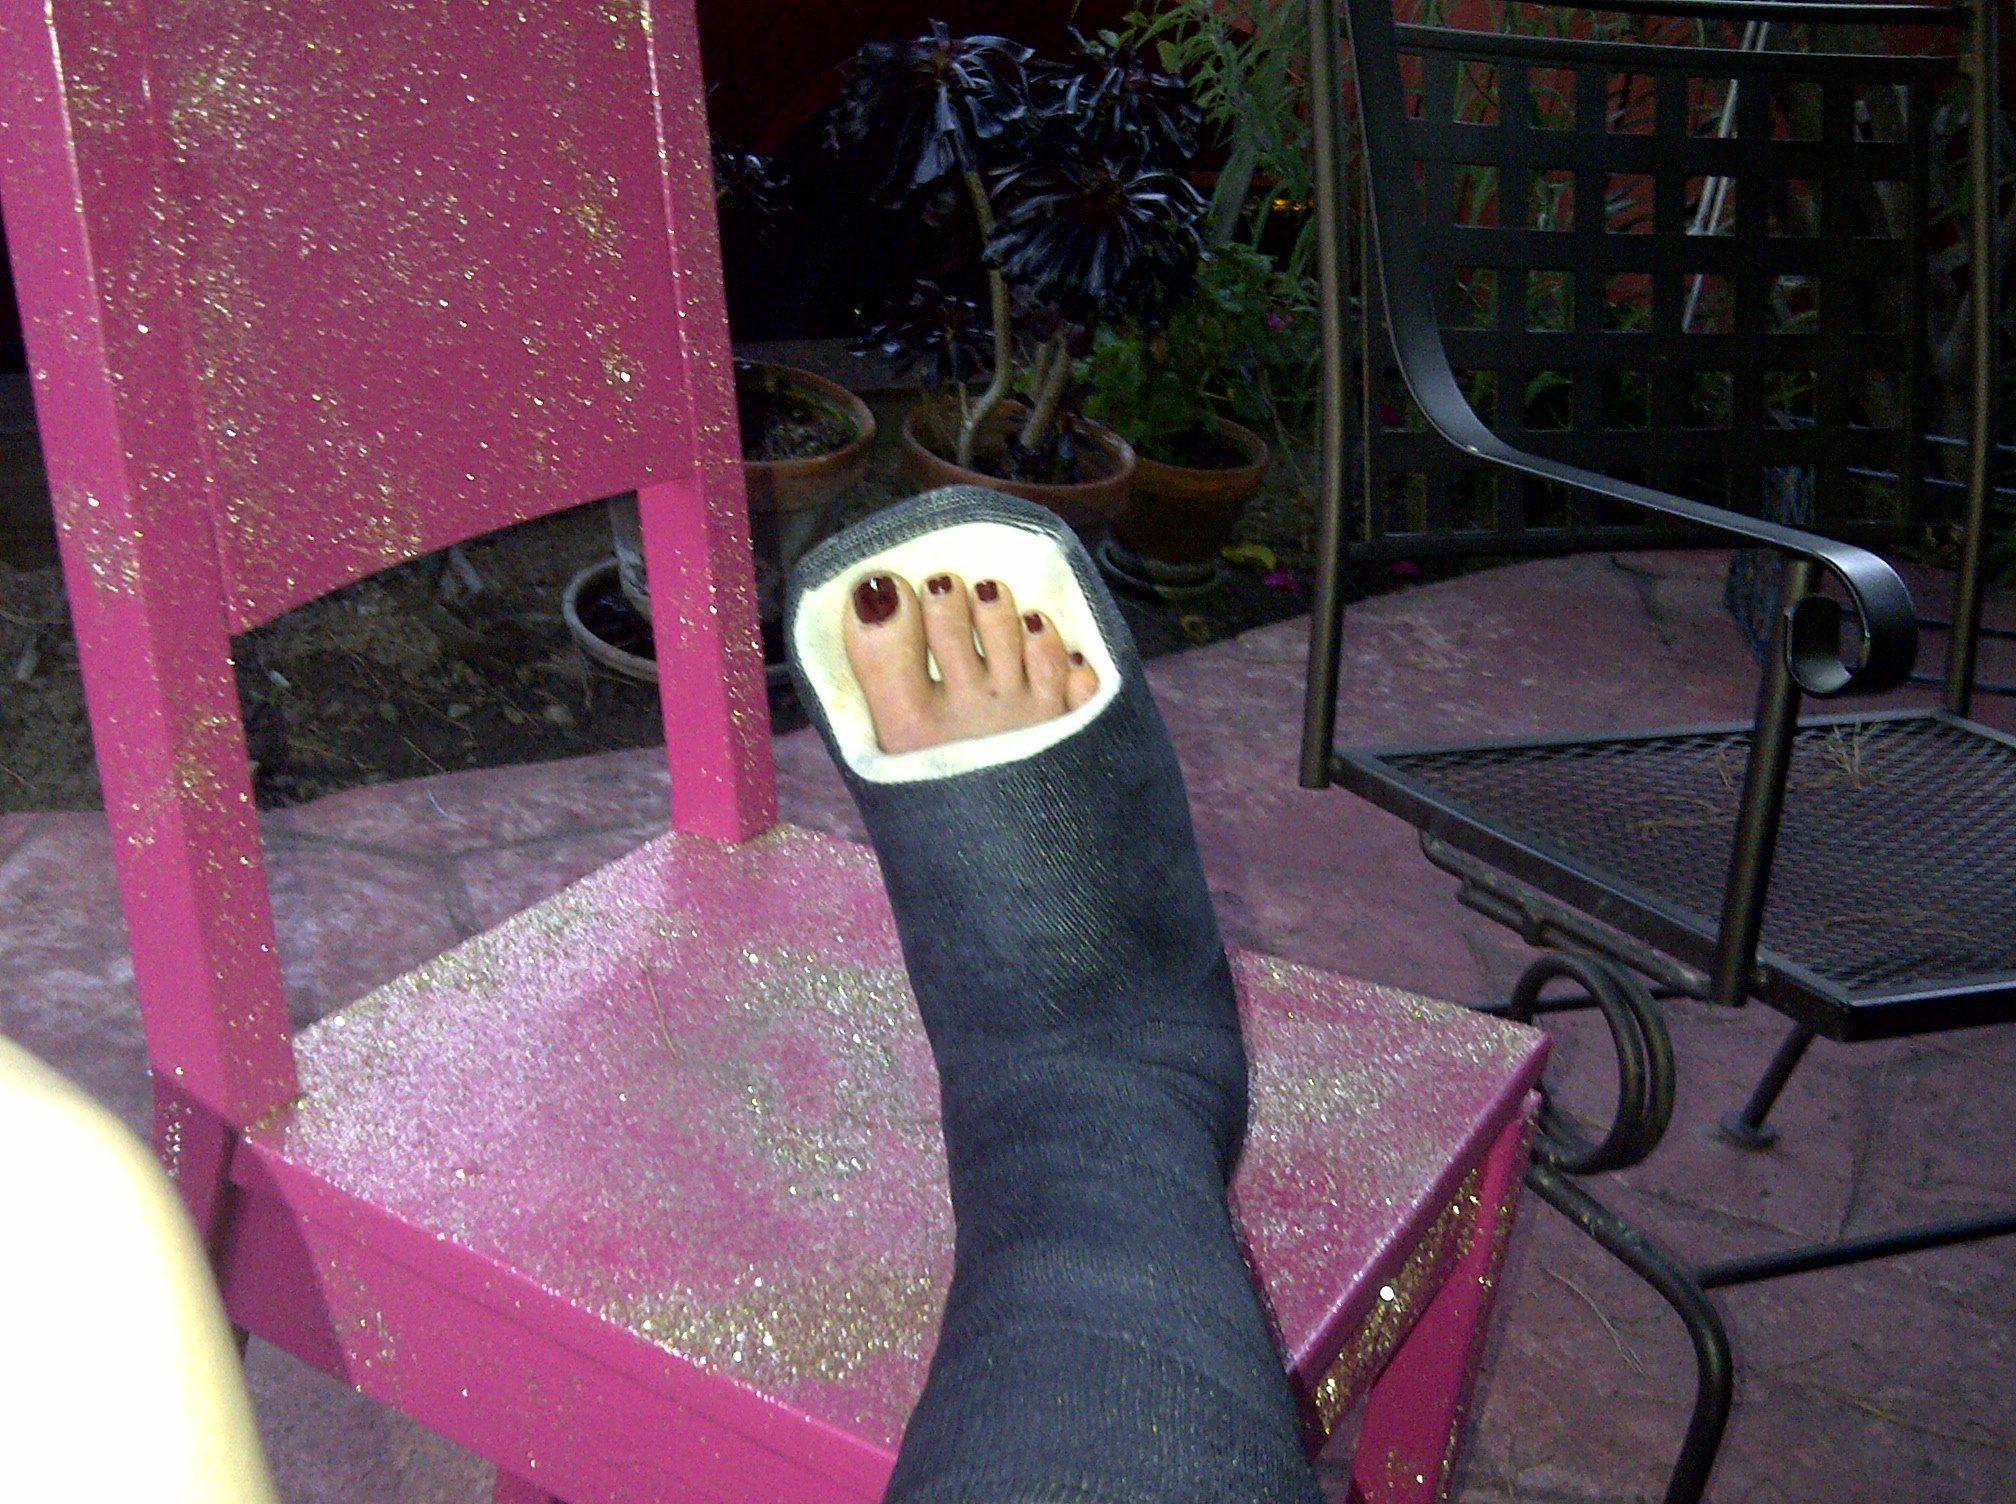 Broken ankle cast